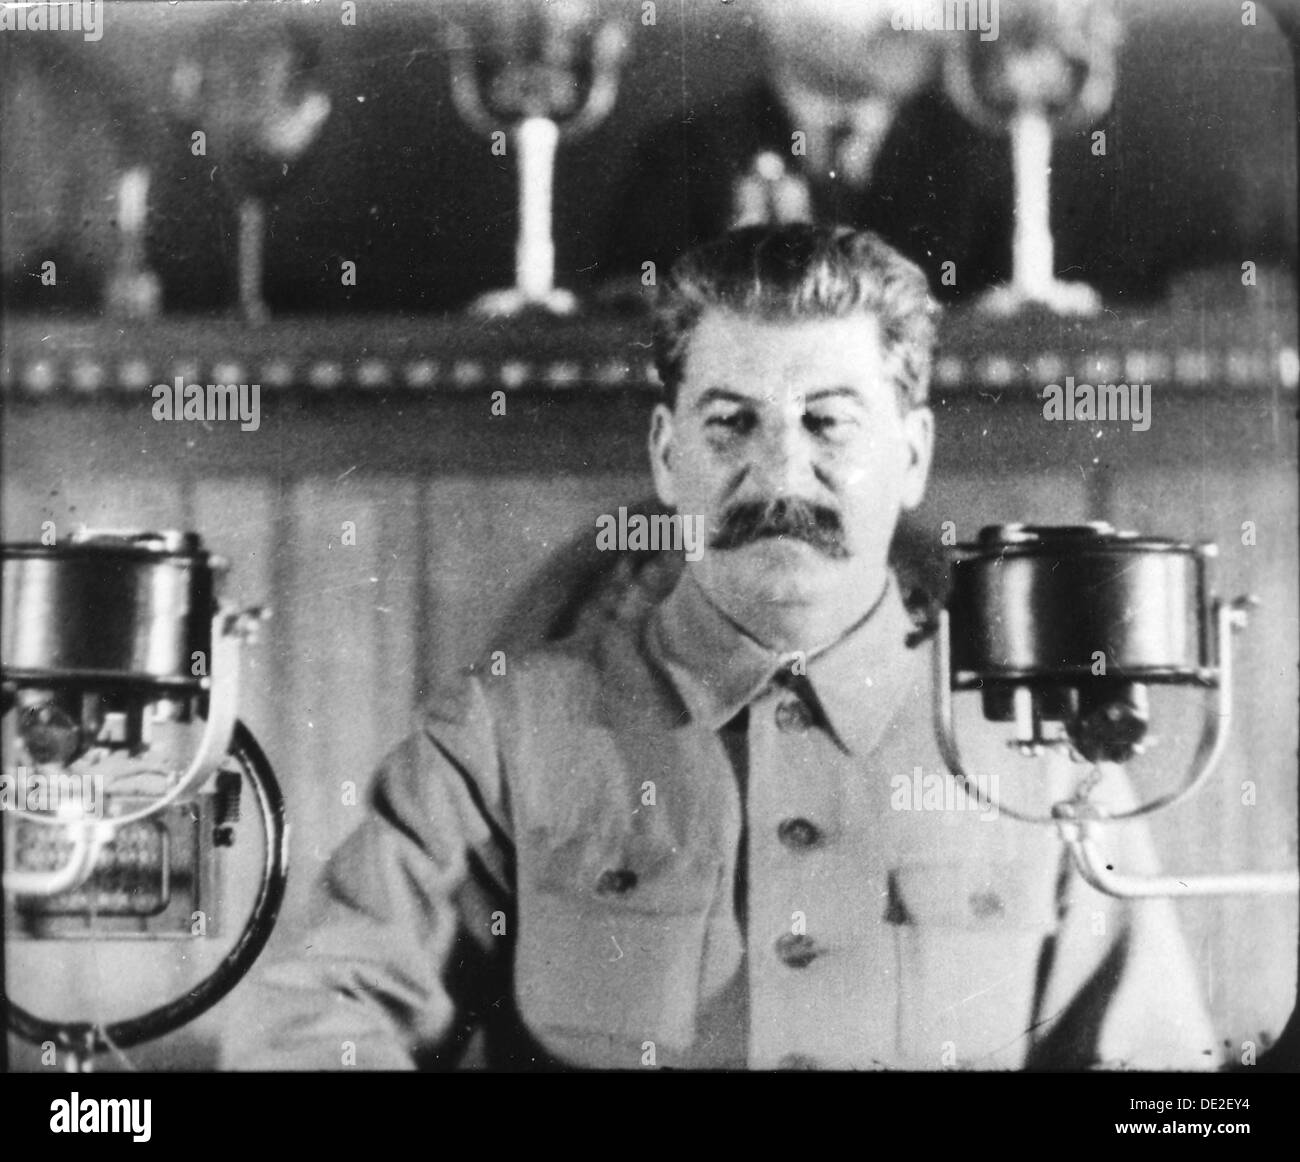 Le leader soviétique Joseph Staline prononce un discours au congrès du Parti Communiste, 1930. Artiste : Inconnu Banque D'Images